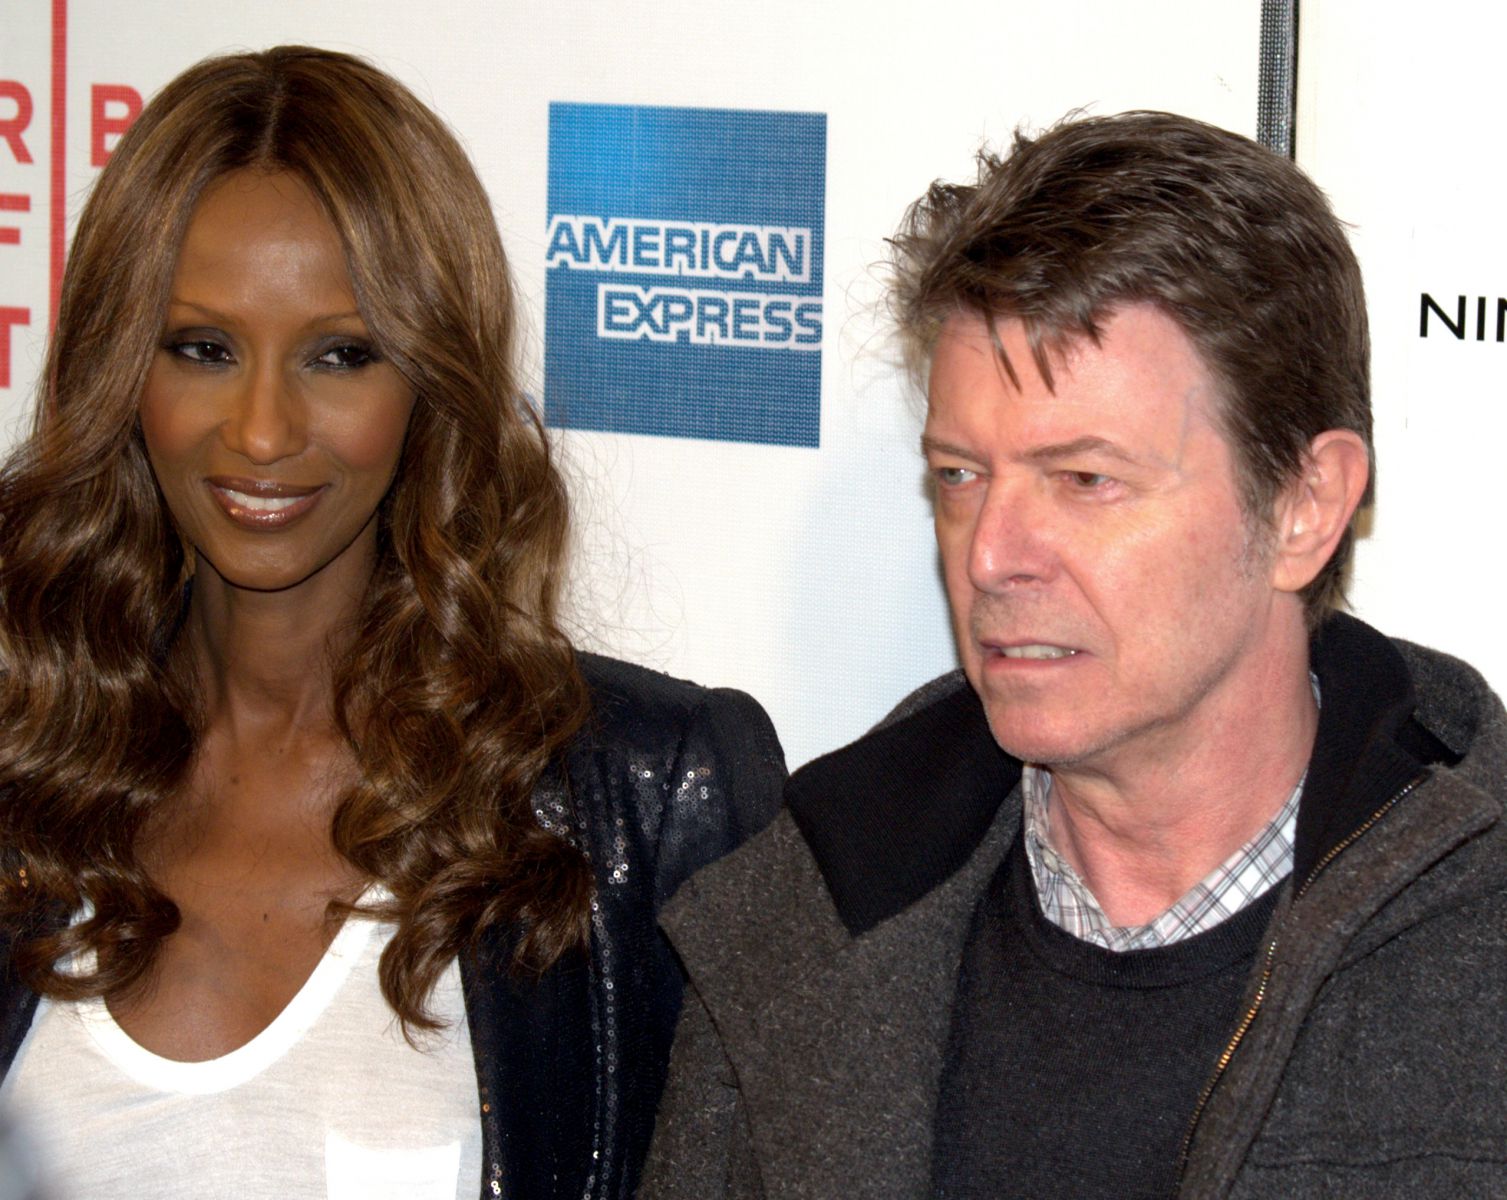 David Bowie olhando de lado ao lado de uma mulher em premiação